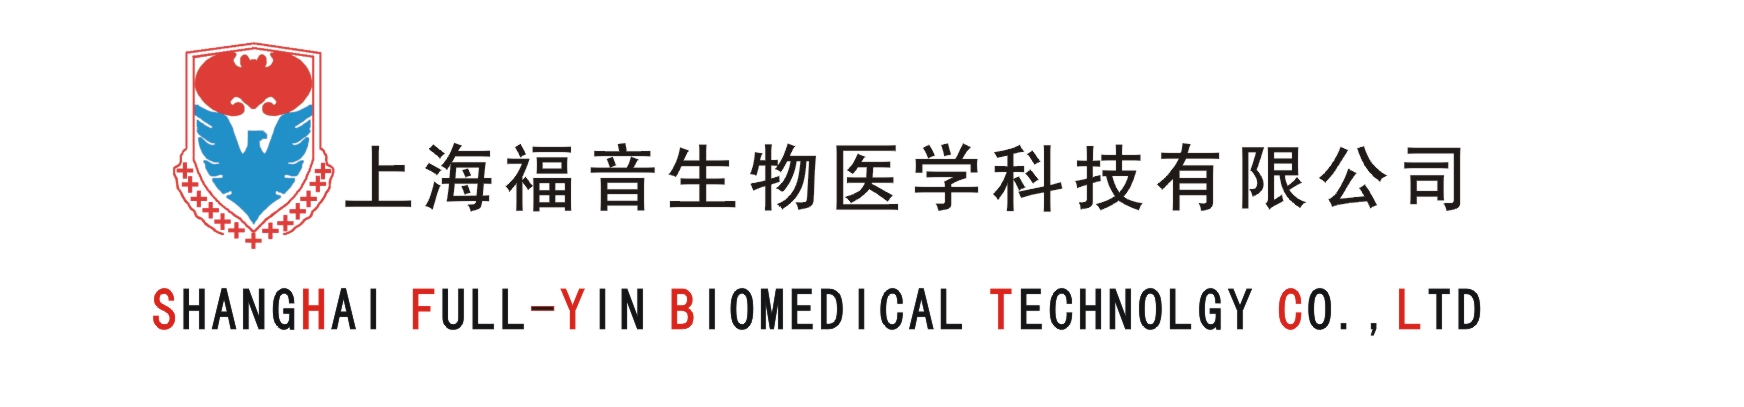 上海福音生物医学科技有限公司